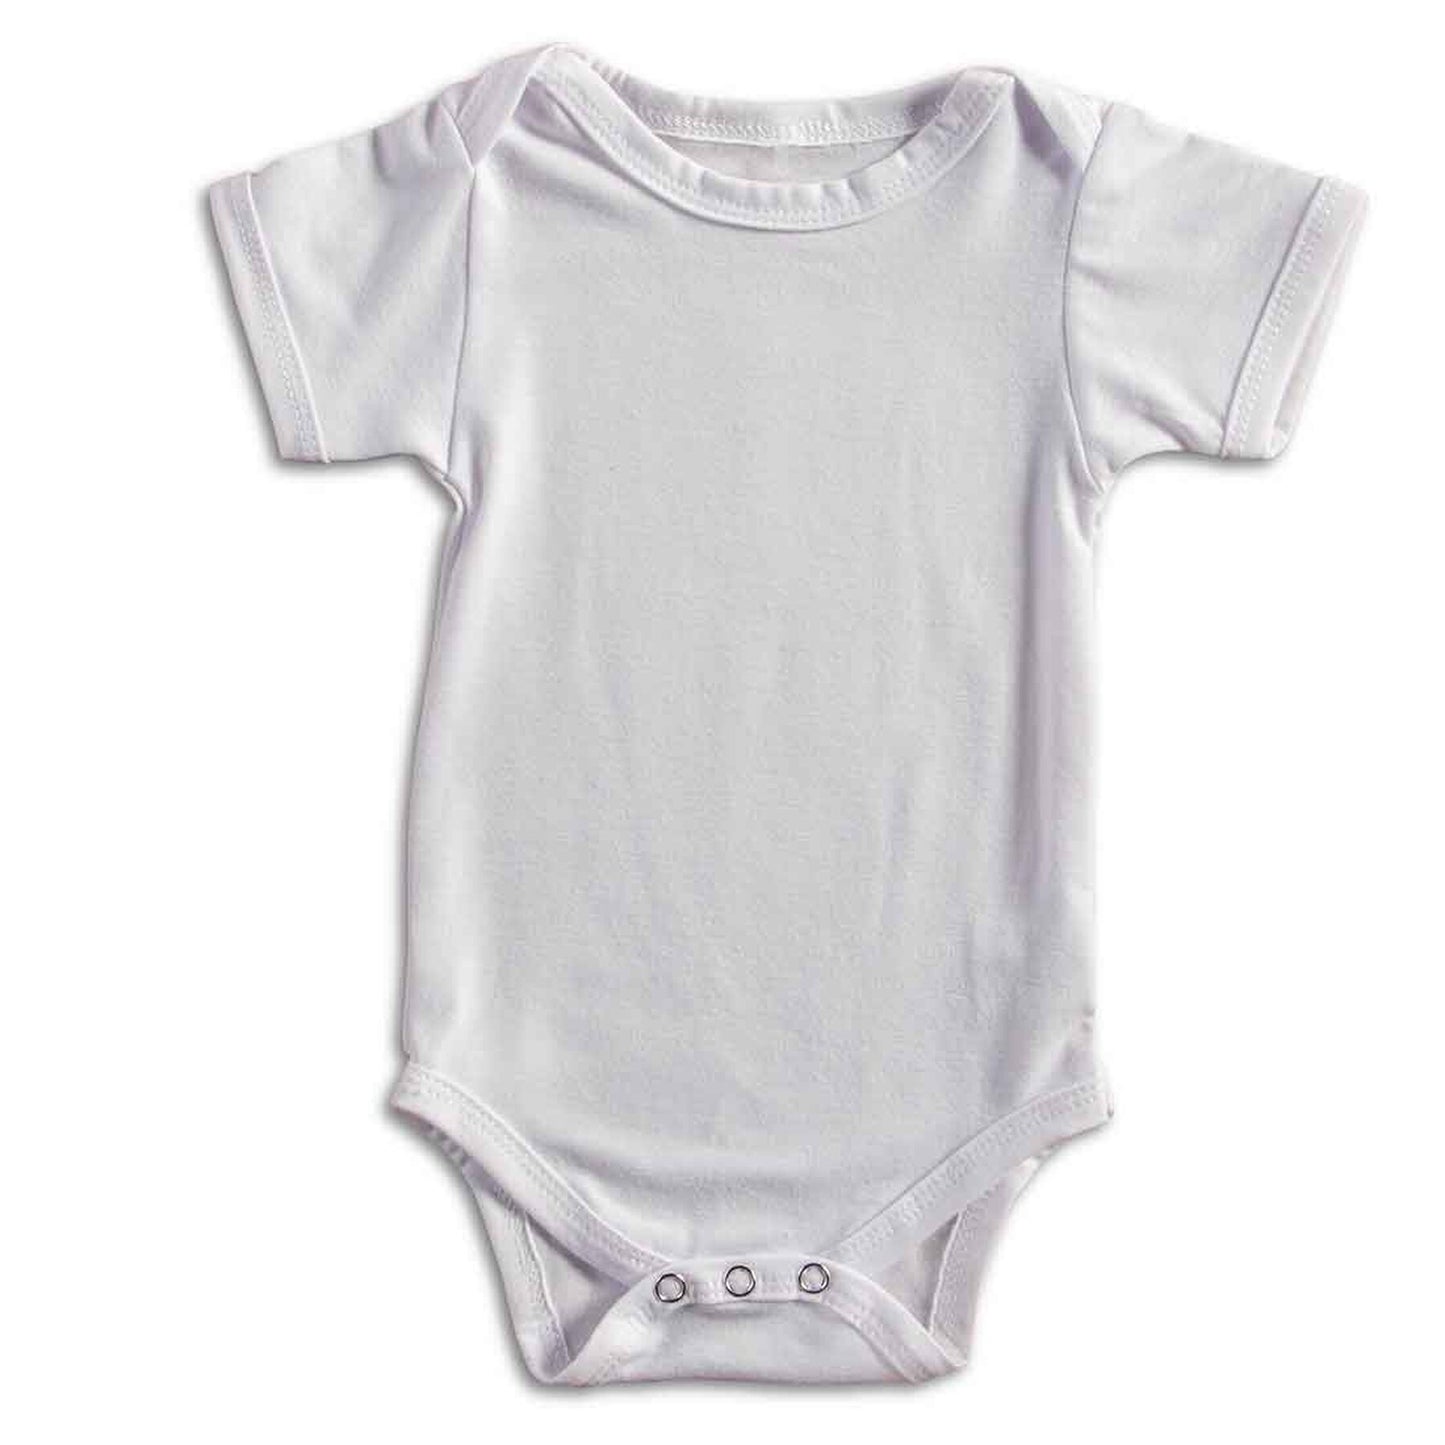 Cricut Baby Bodysuit - Blank